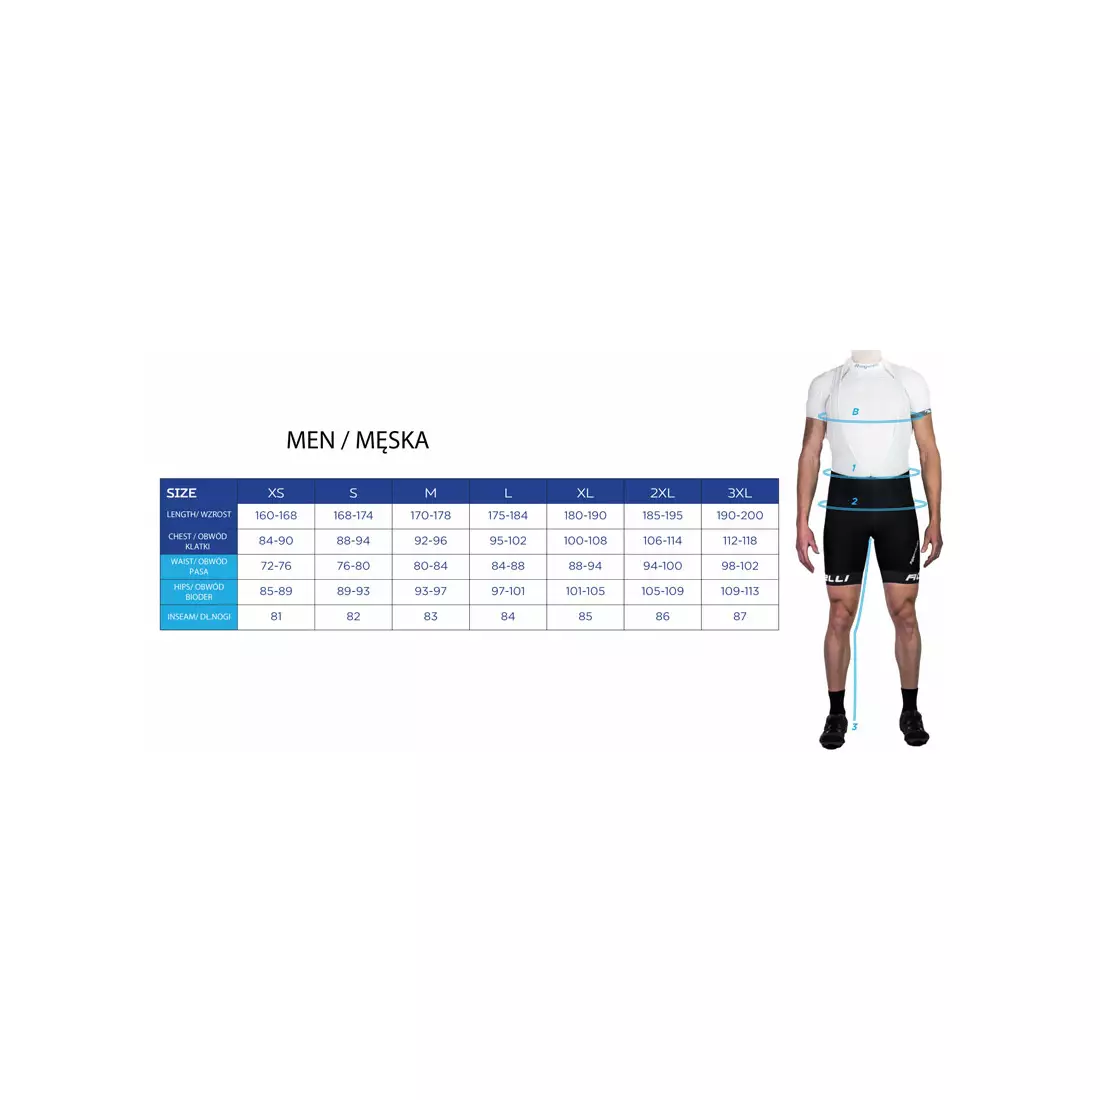 ROGELLI TRI FLORIDA 030.001 férfi triatlon öltöny, kék és fekete